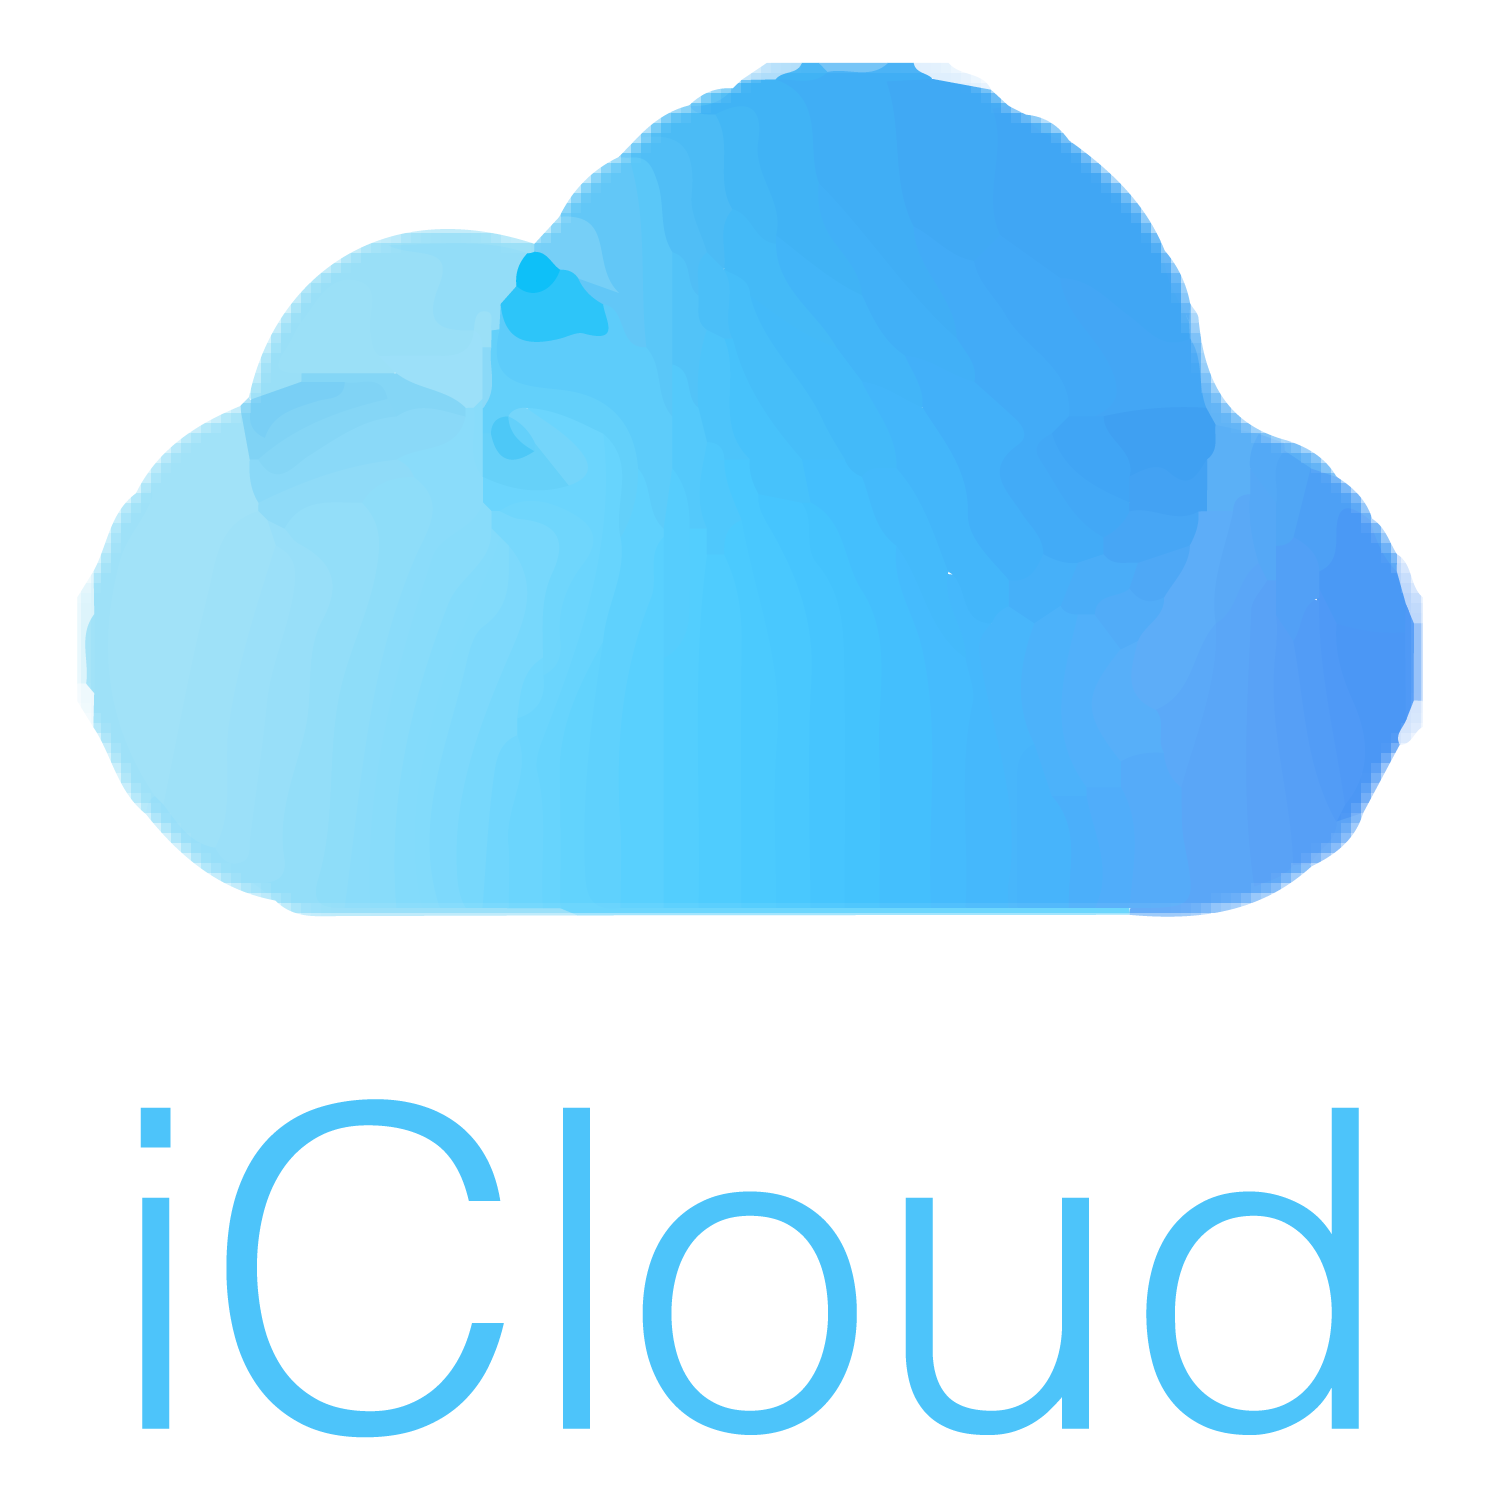 apple_icloud_logo_design_mountos